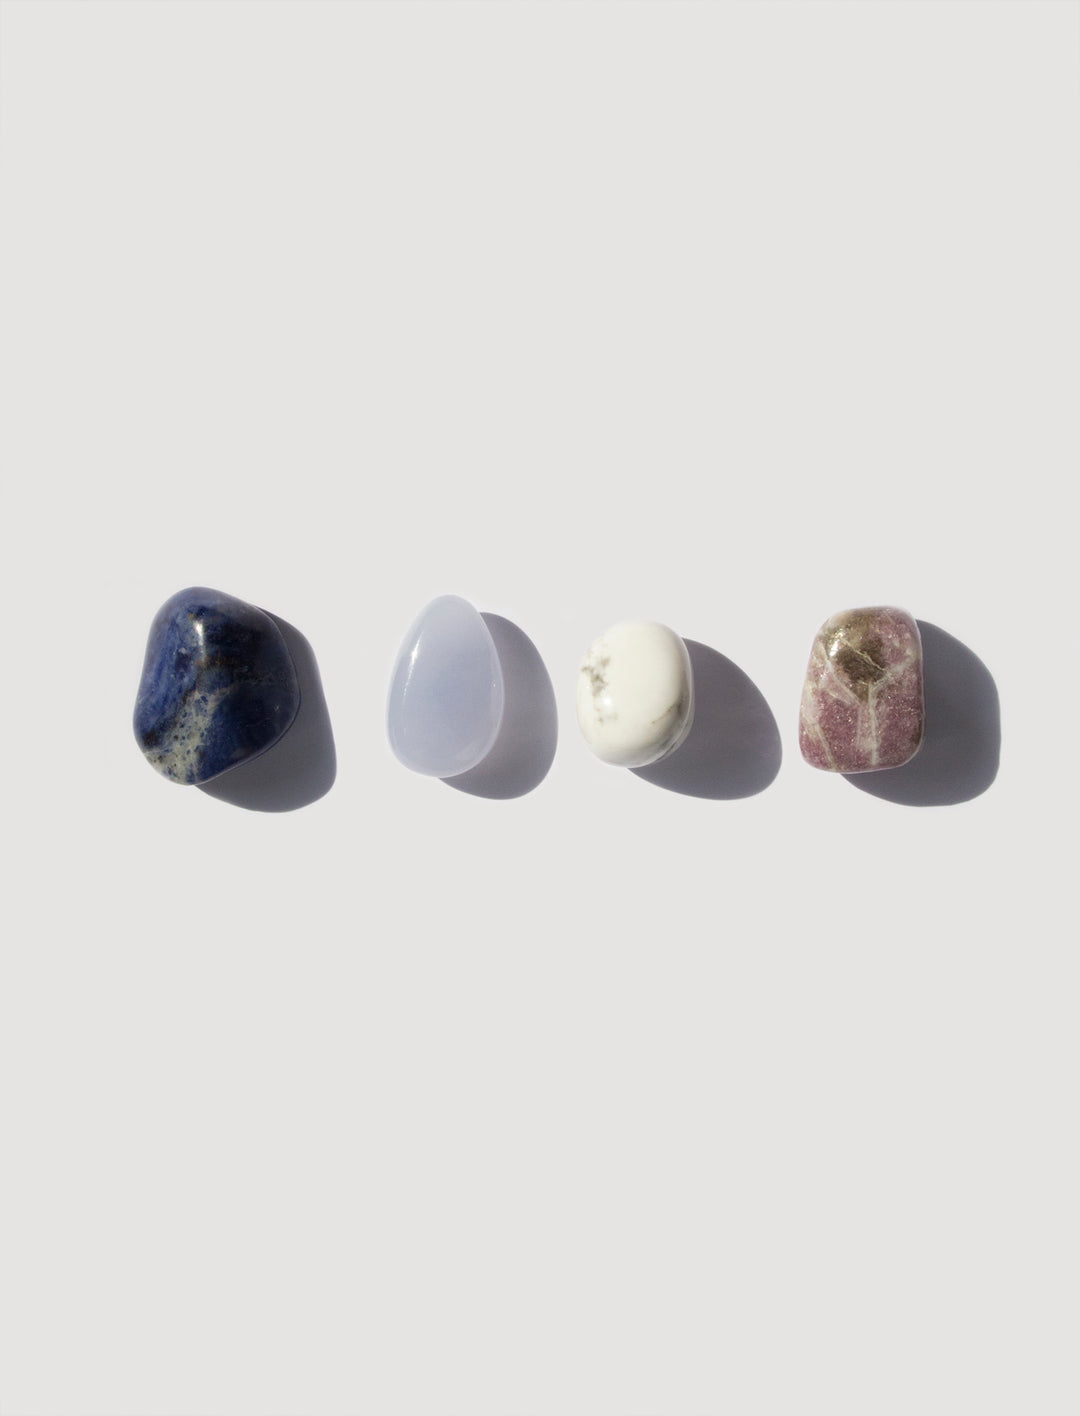 kit pierres rituels cristaux lithothérapie anti stress healing crystals lithothérapy  howlite sodalite calcédoine bleue lépidolite